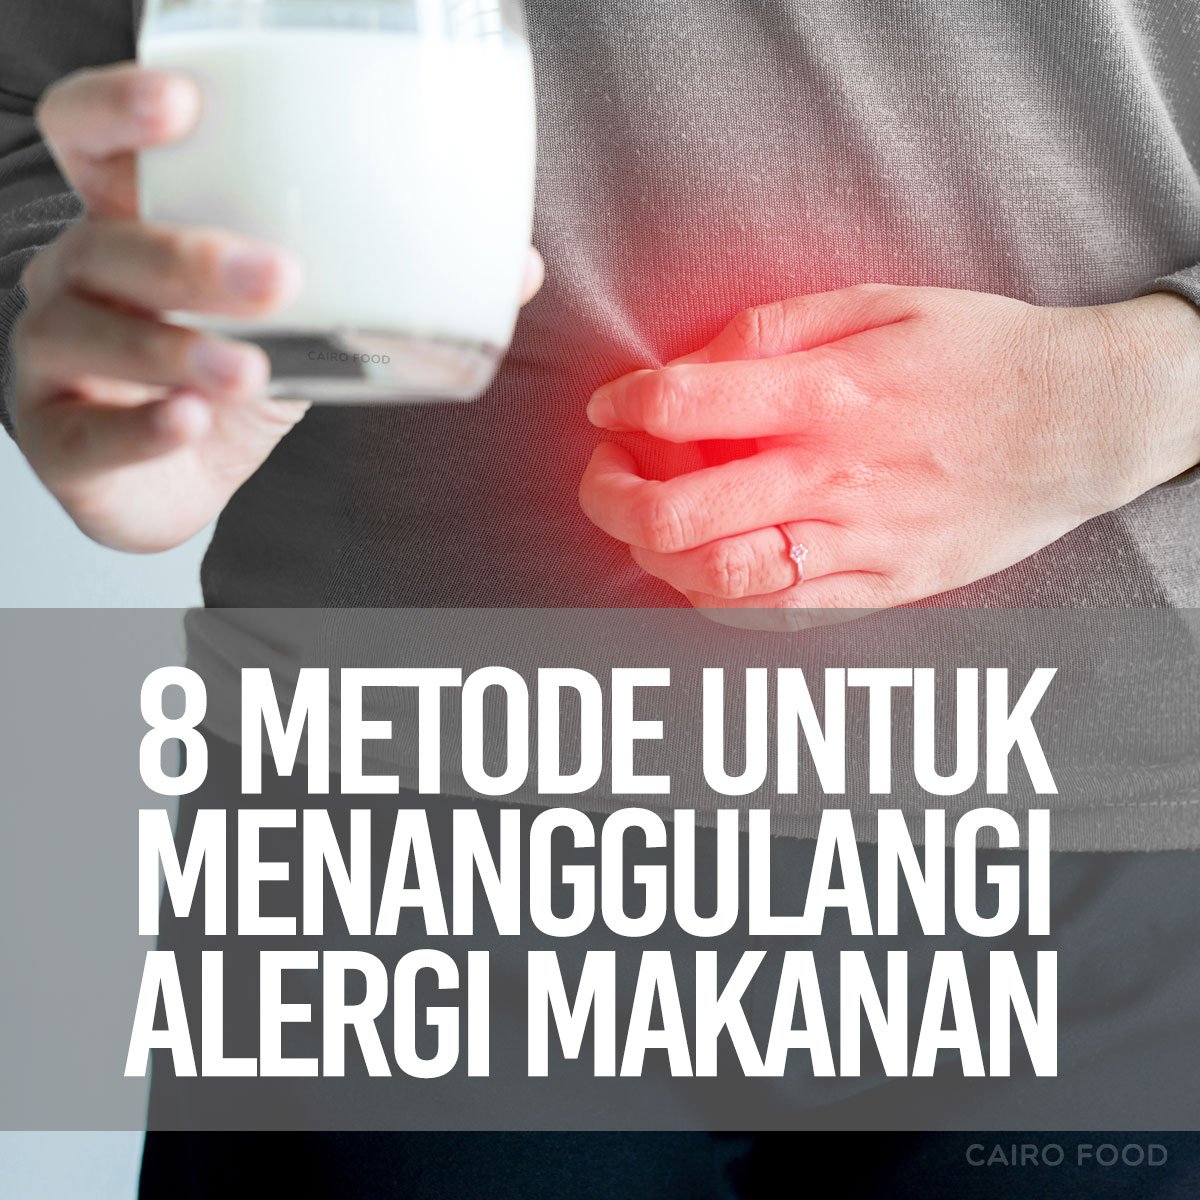 8 metode untuk menanggulangi alergi makanan